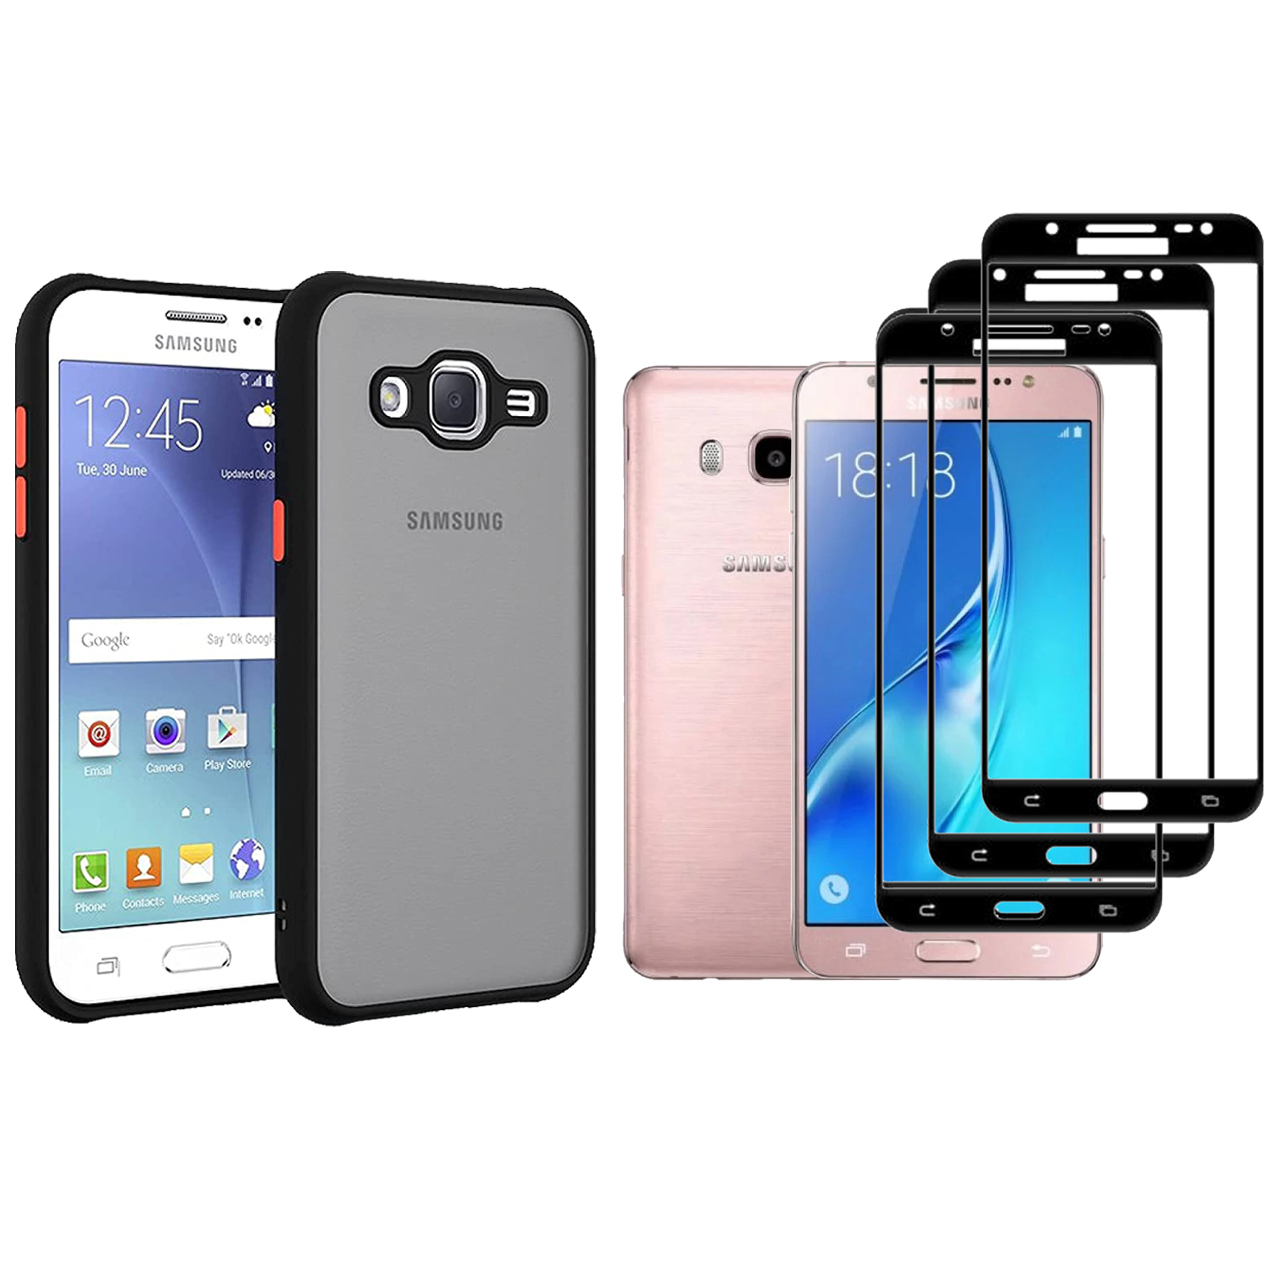  کاور ری گان مدل matte- J710 مناسب برای گوشی موبایل سامسونگ Galaxy J7 2016/J710 به همراه محافظ صفحه نمایش بسته 3 عددی